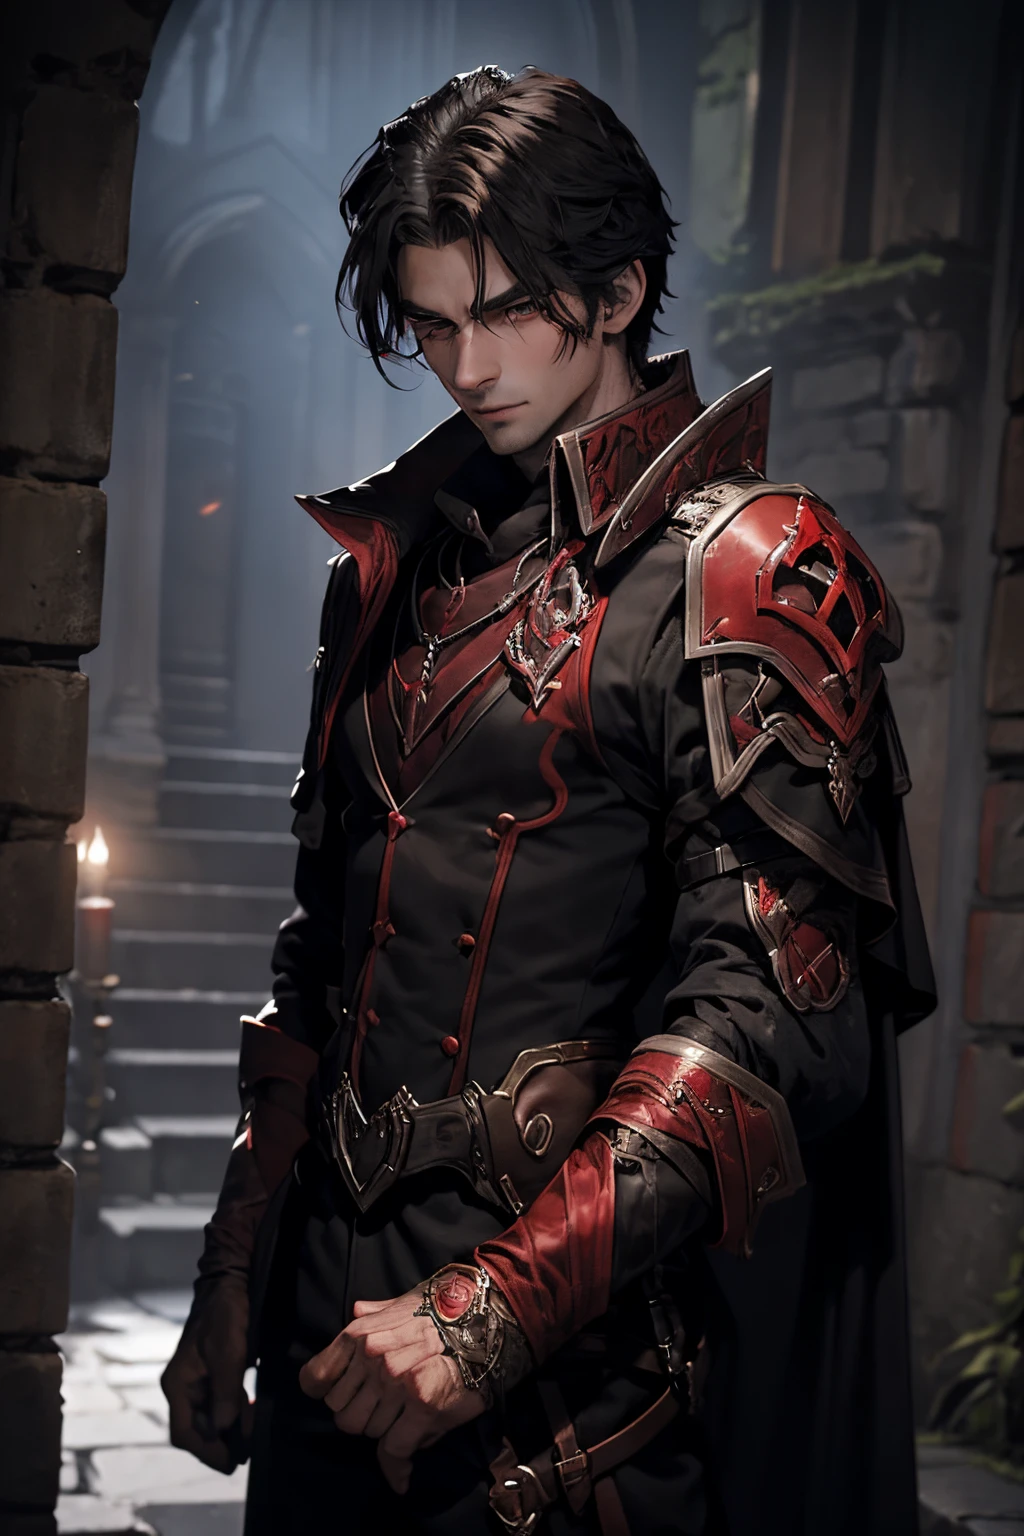 Торжественный мужчина-дампир-охотник за кровью готов к ночной охоте.. Представьте себе персонажа с ярко выраженными вампирическими чертами., одет в темно-черные и красные доспехи, держит в руках два кроваво-красных меча.